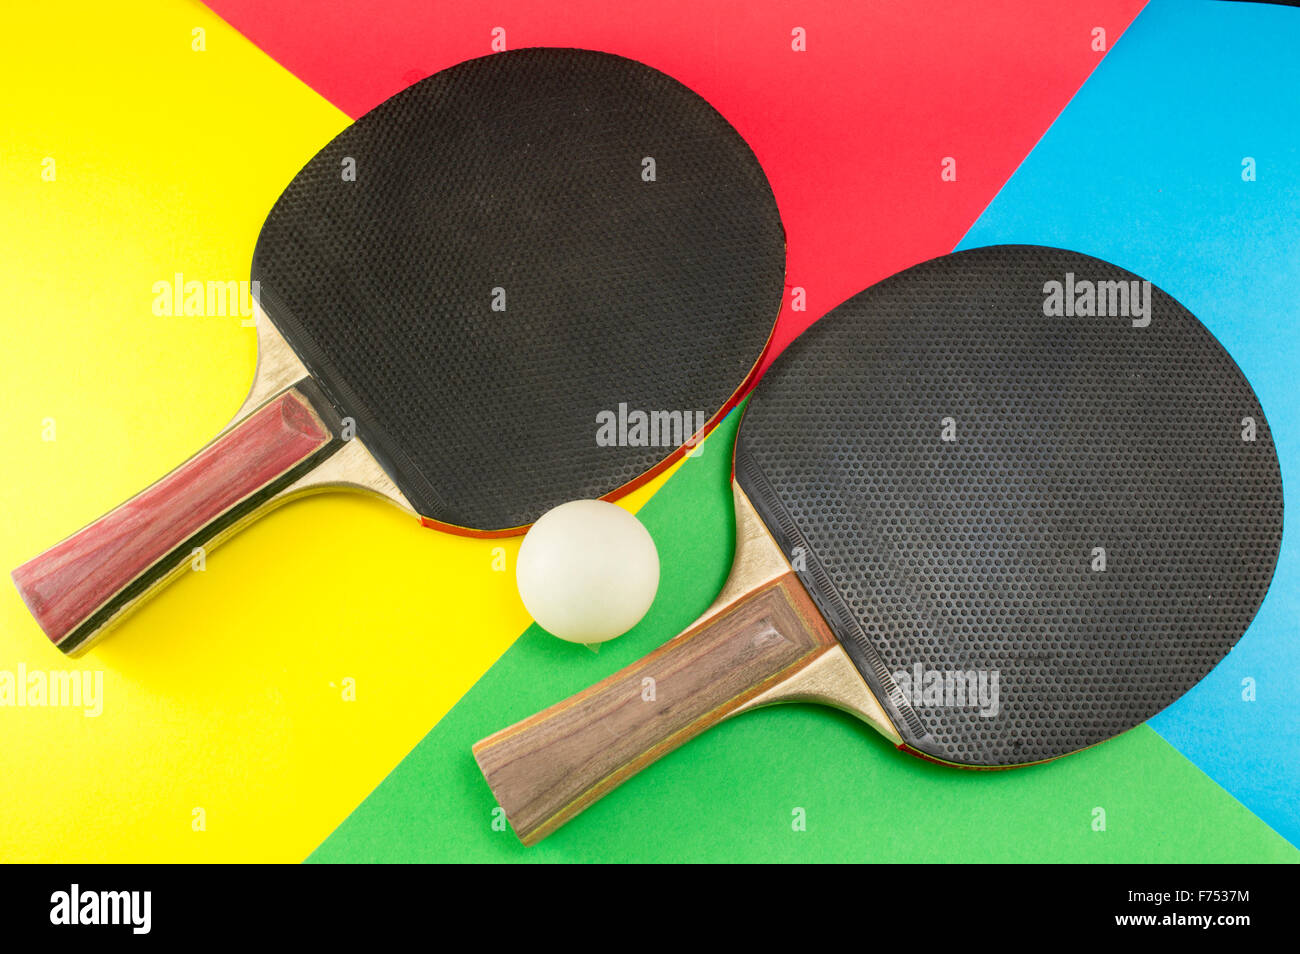 Par de palas de tenis de mesa en un colorido fondo collage Foto de stock